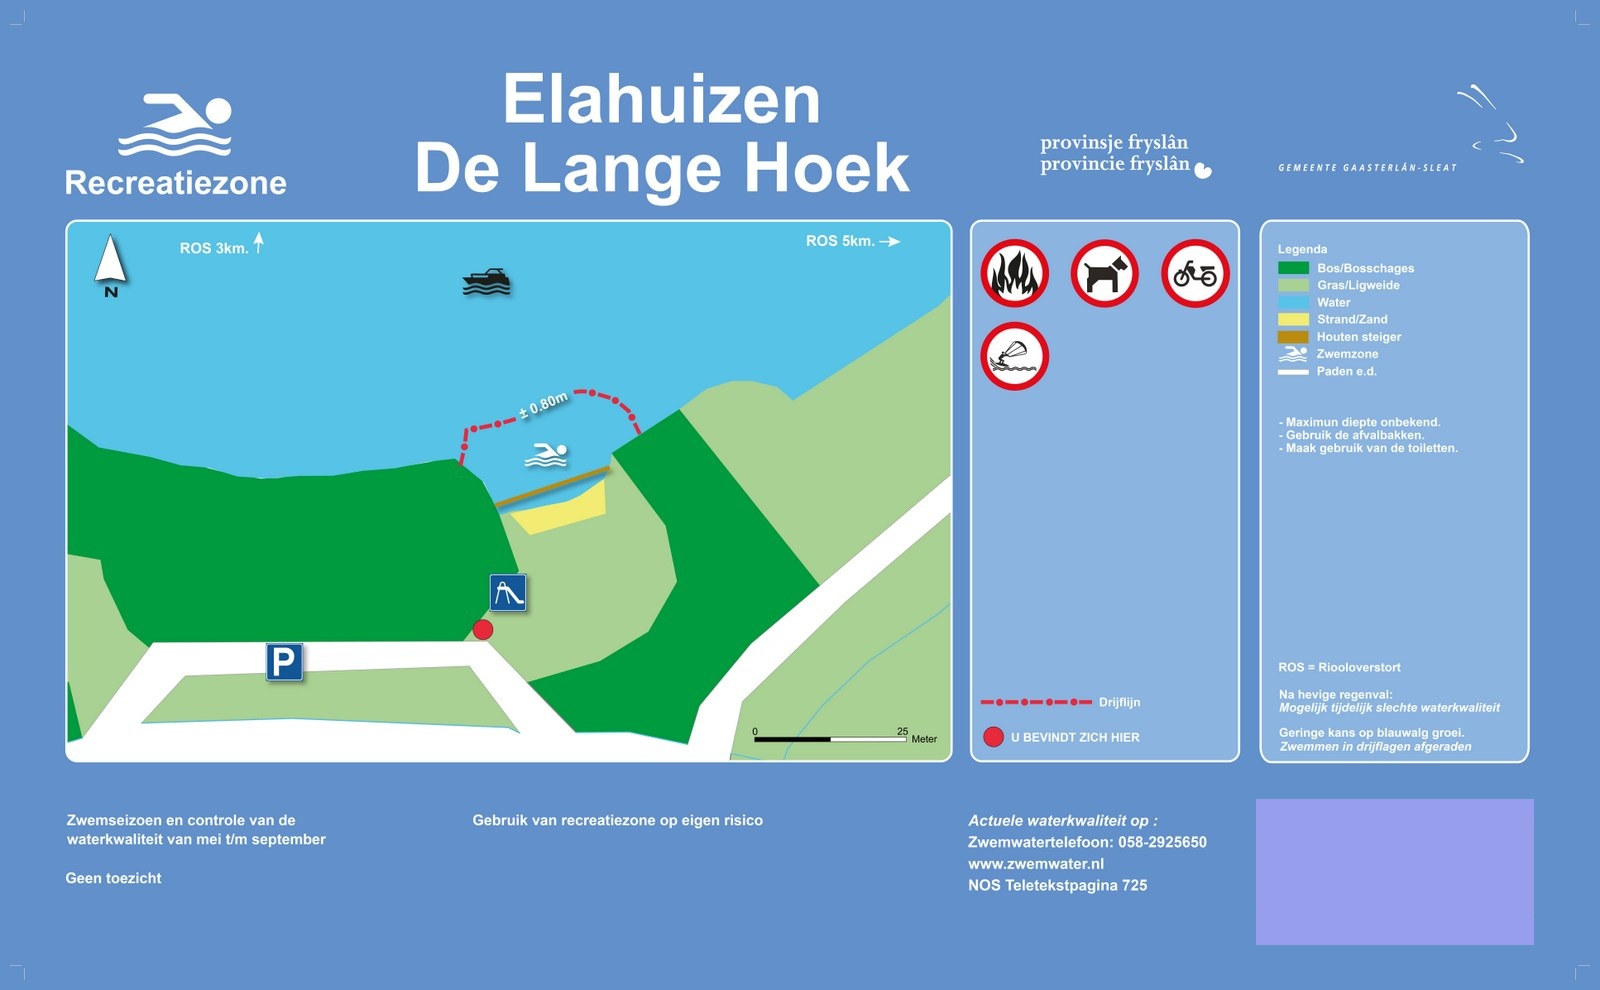 Het informatiebord bij zwemlocatie Elahuizen De Lange Hoek